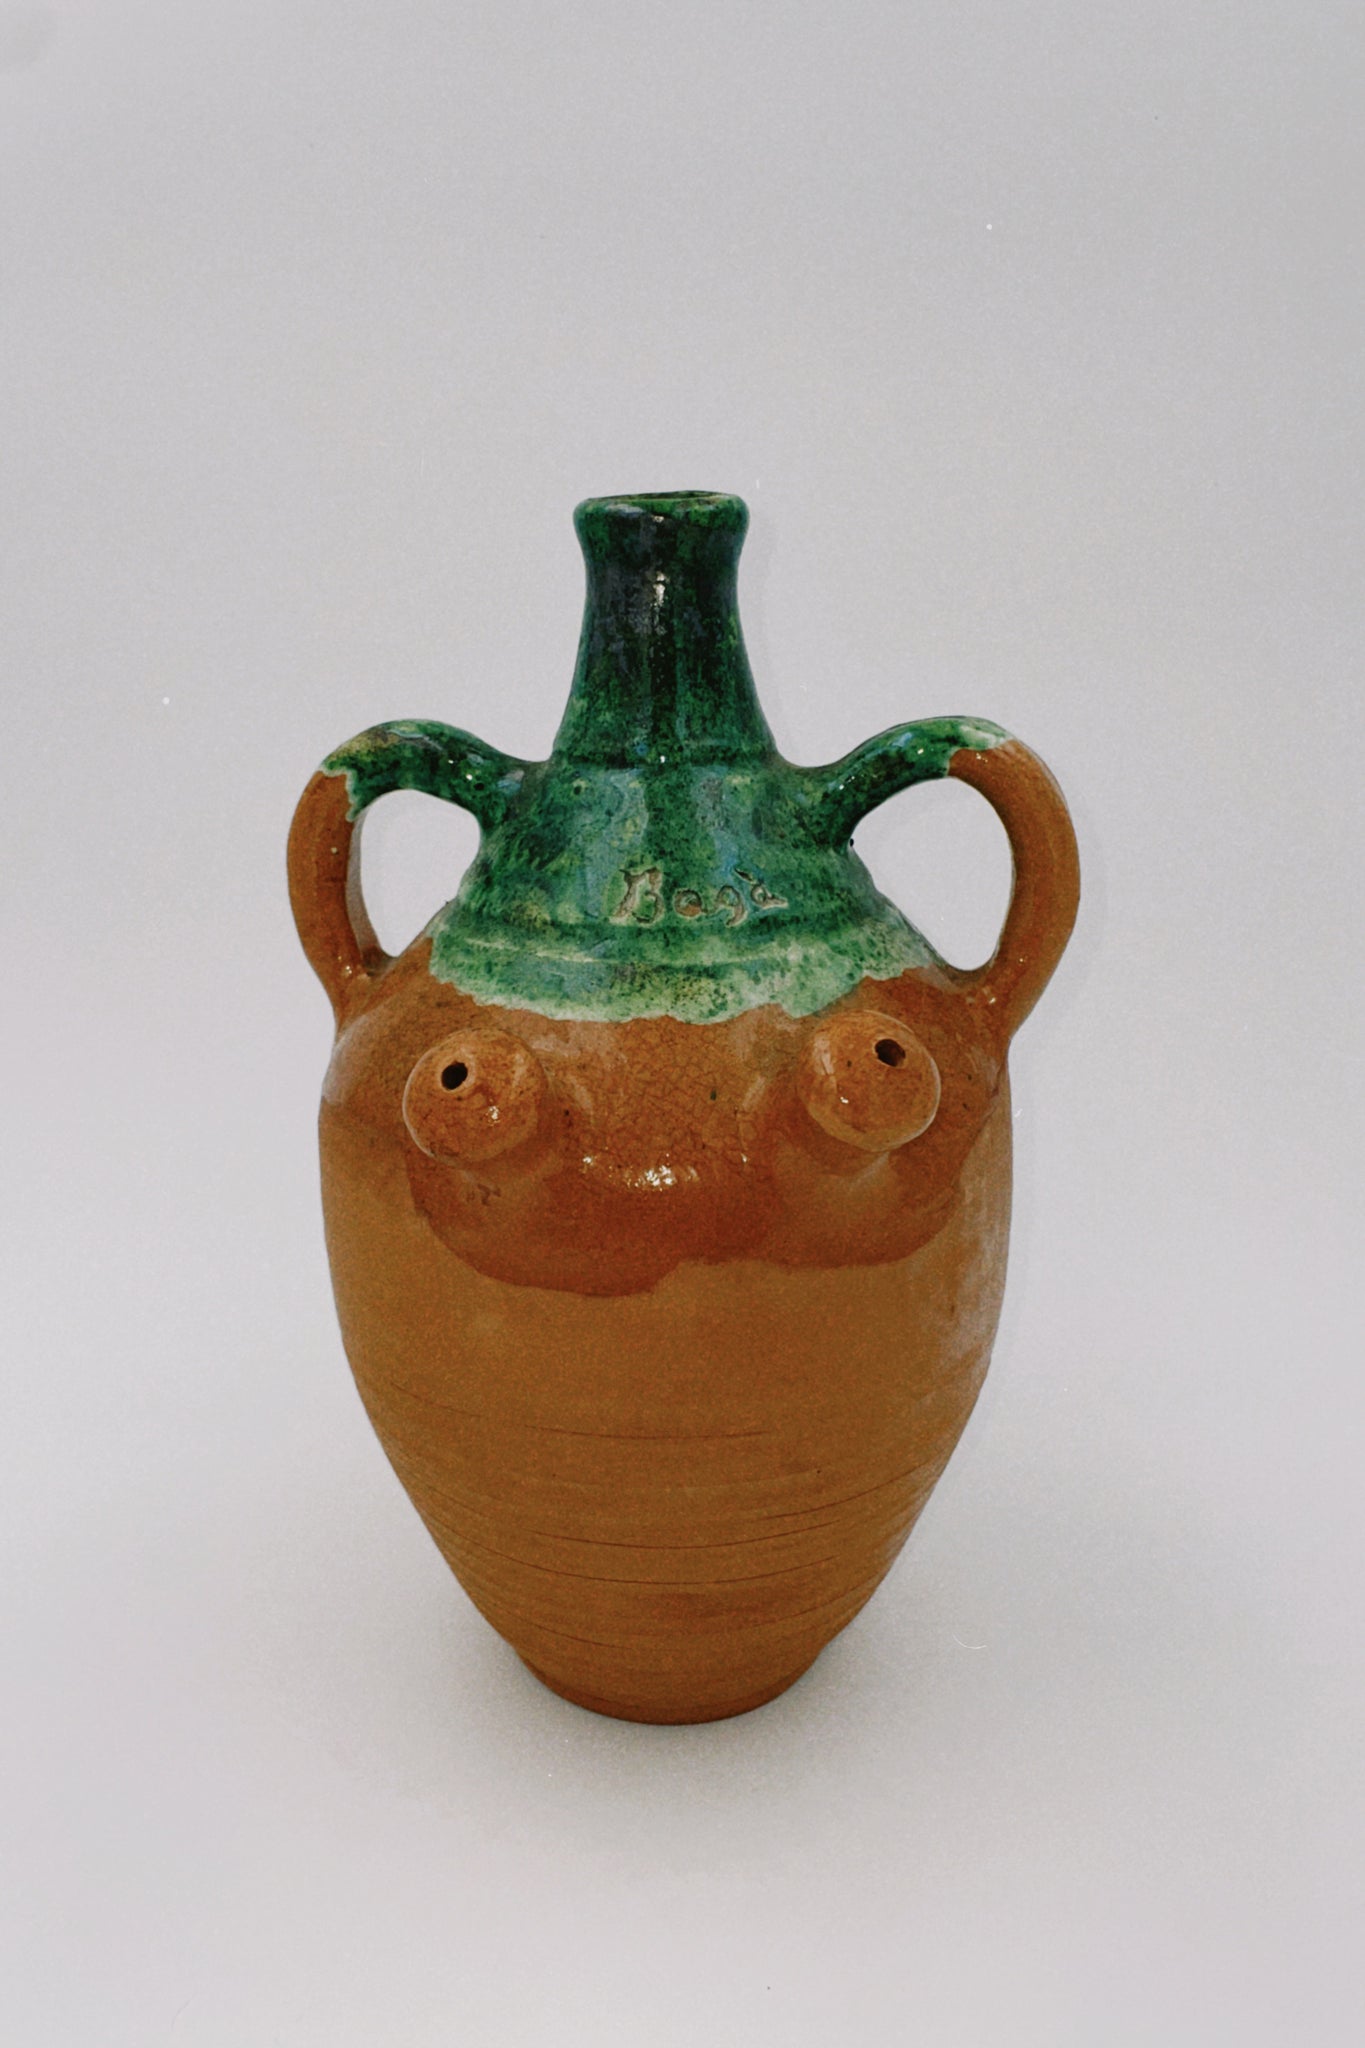 Ceramic Clay and Green Jug